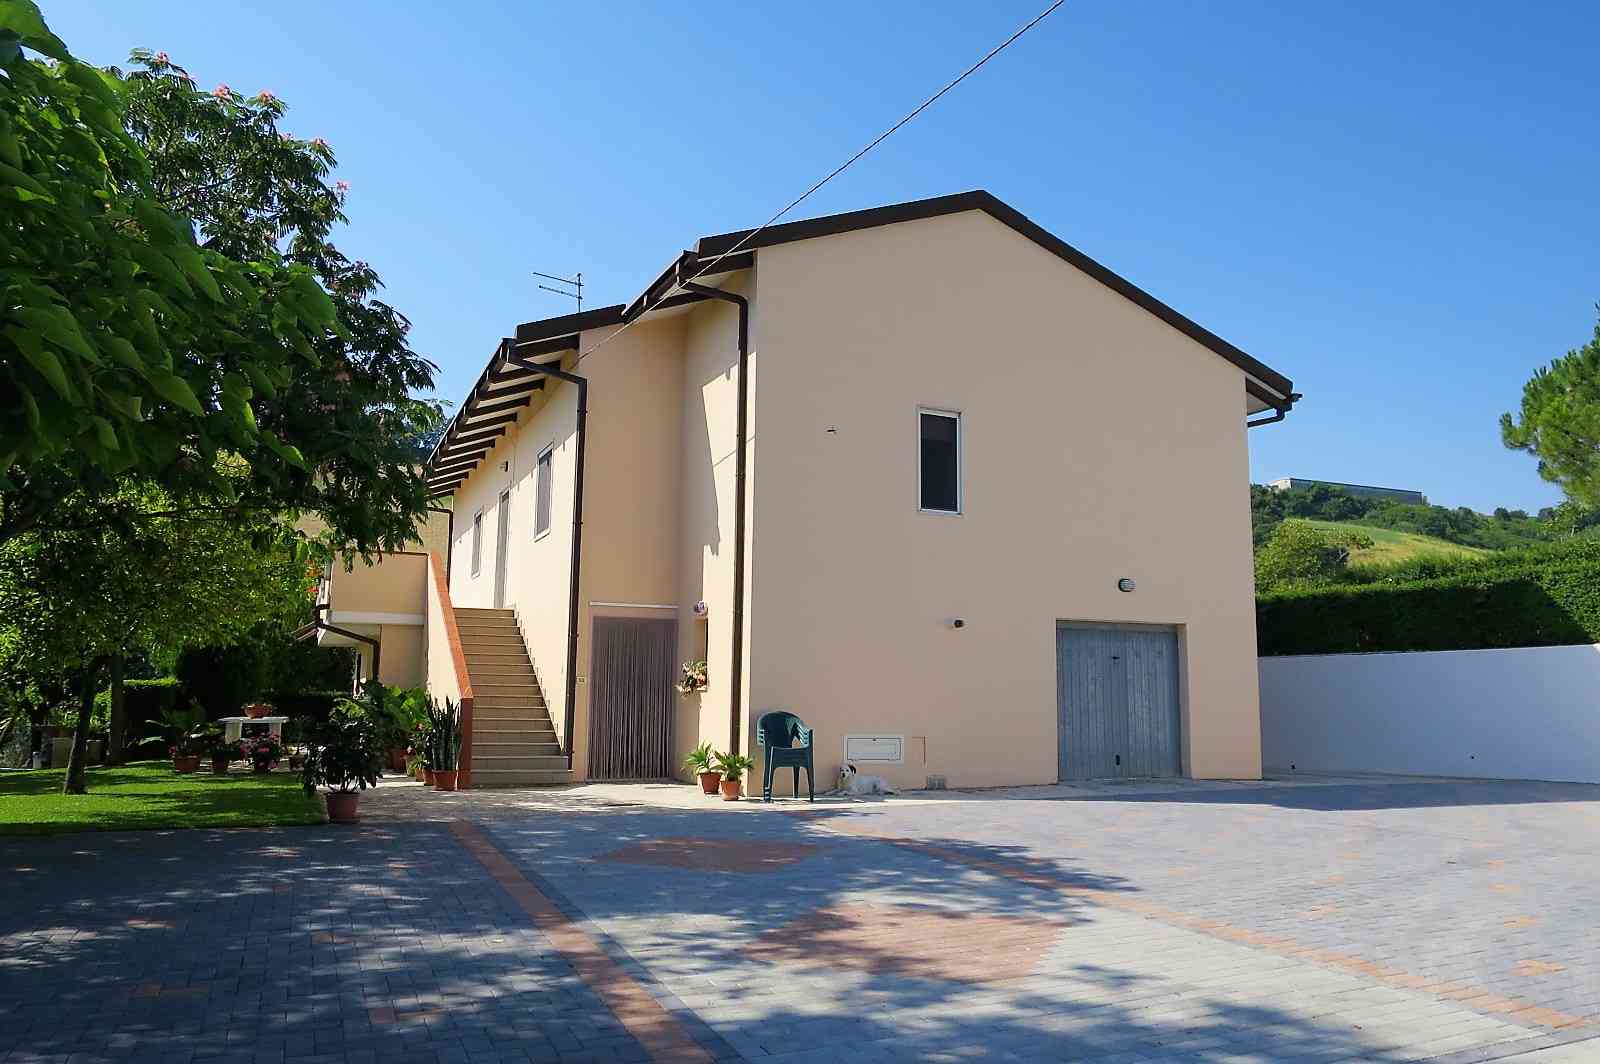 Casa di campagna Casa di campagna in vendita Loreto Aprutino (PE), Casa Nespolo - Loreto Aprutino - EUR 265.353 300